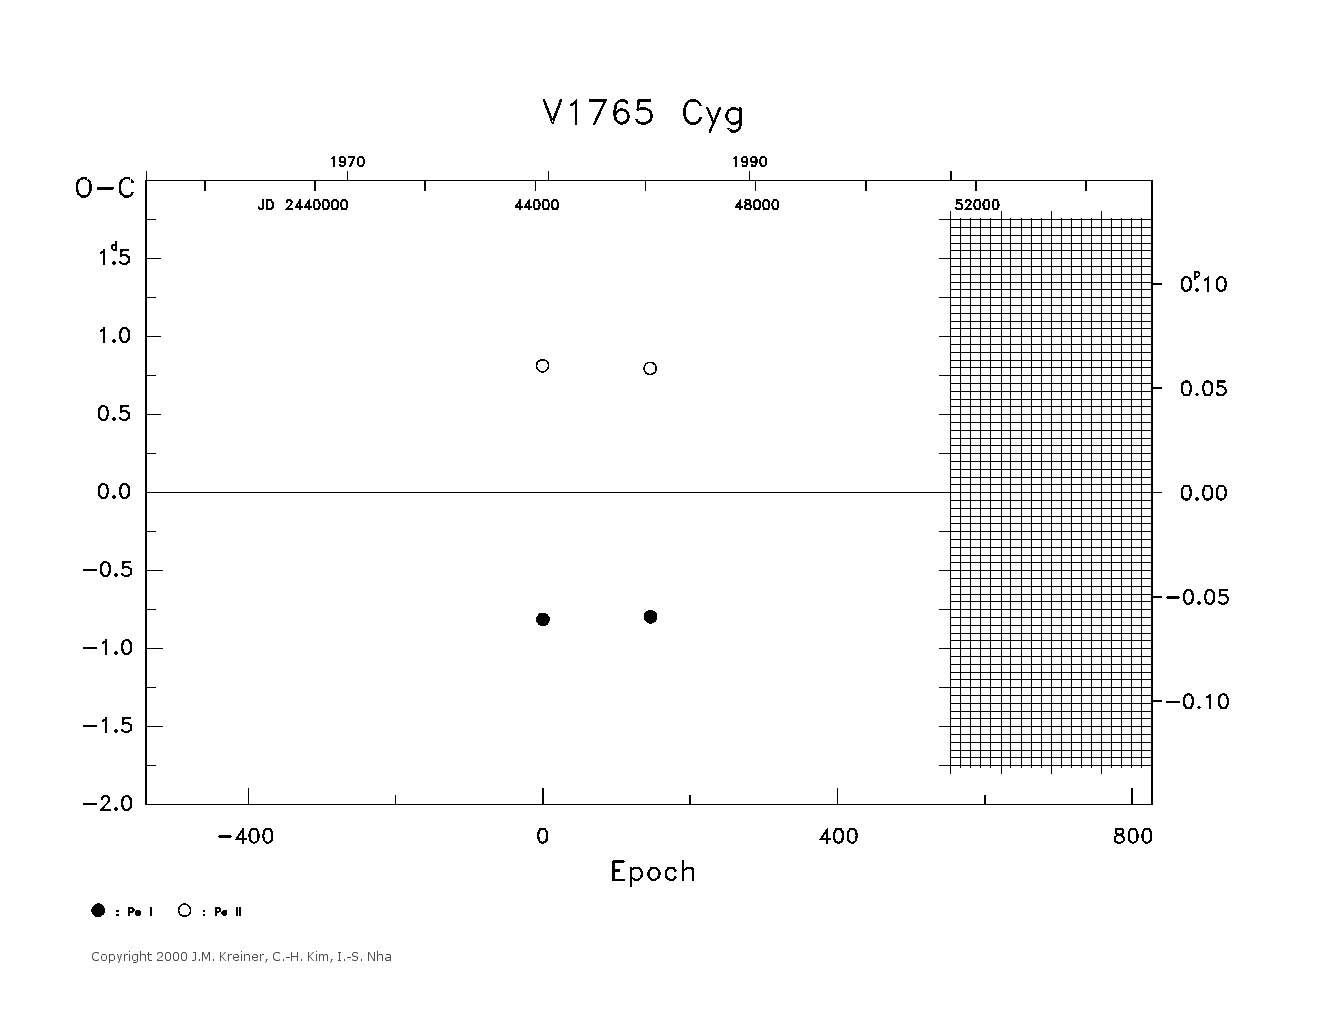 [IMAGE: large V1765 CYG O-C diagram]